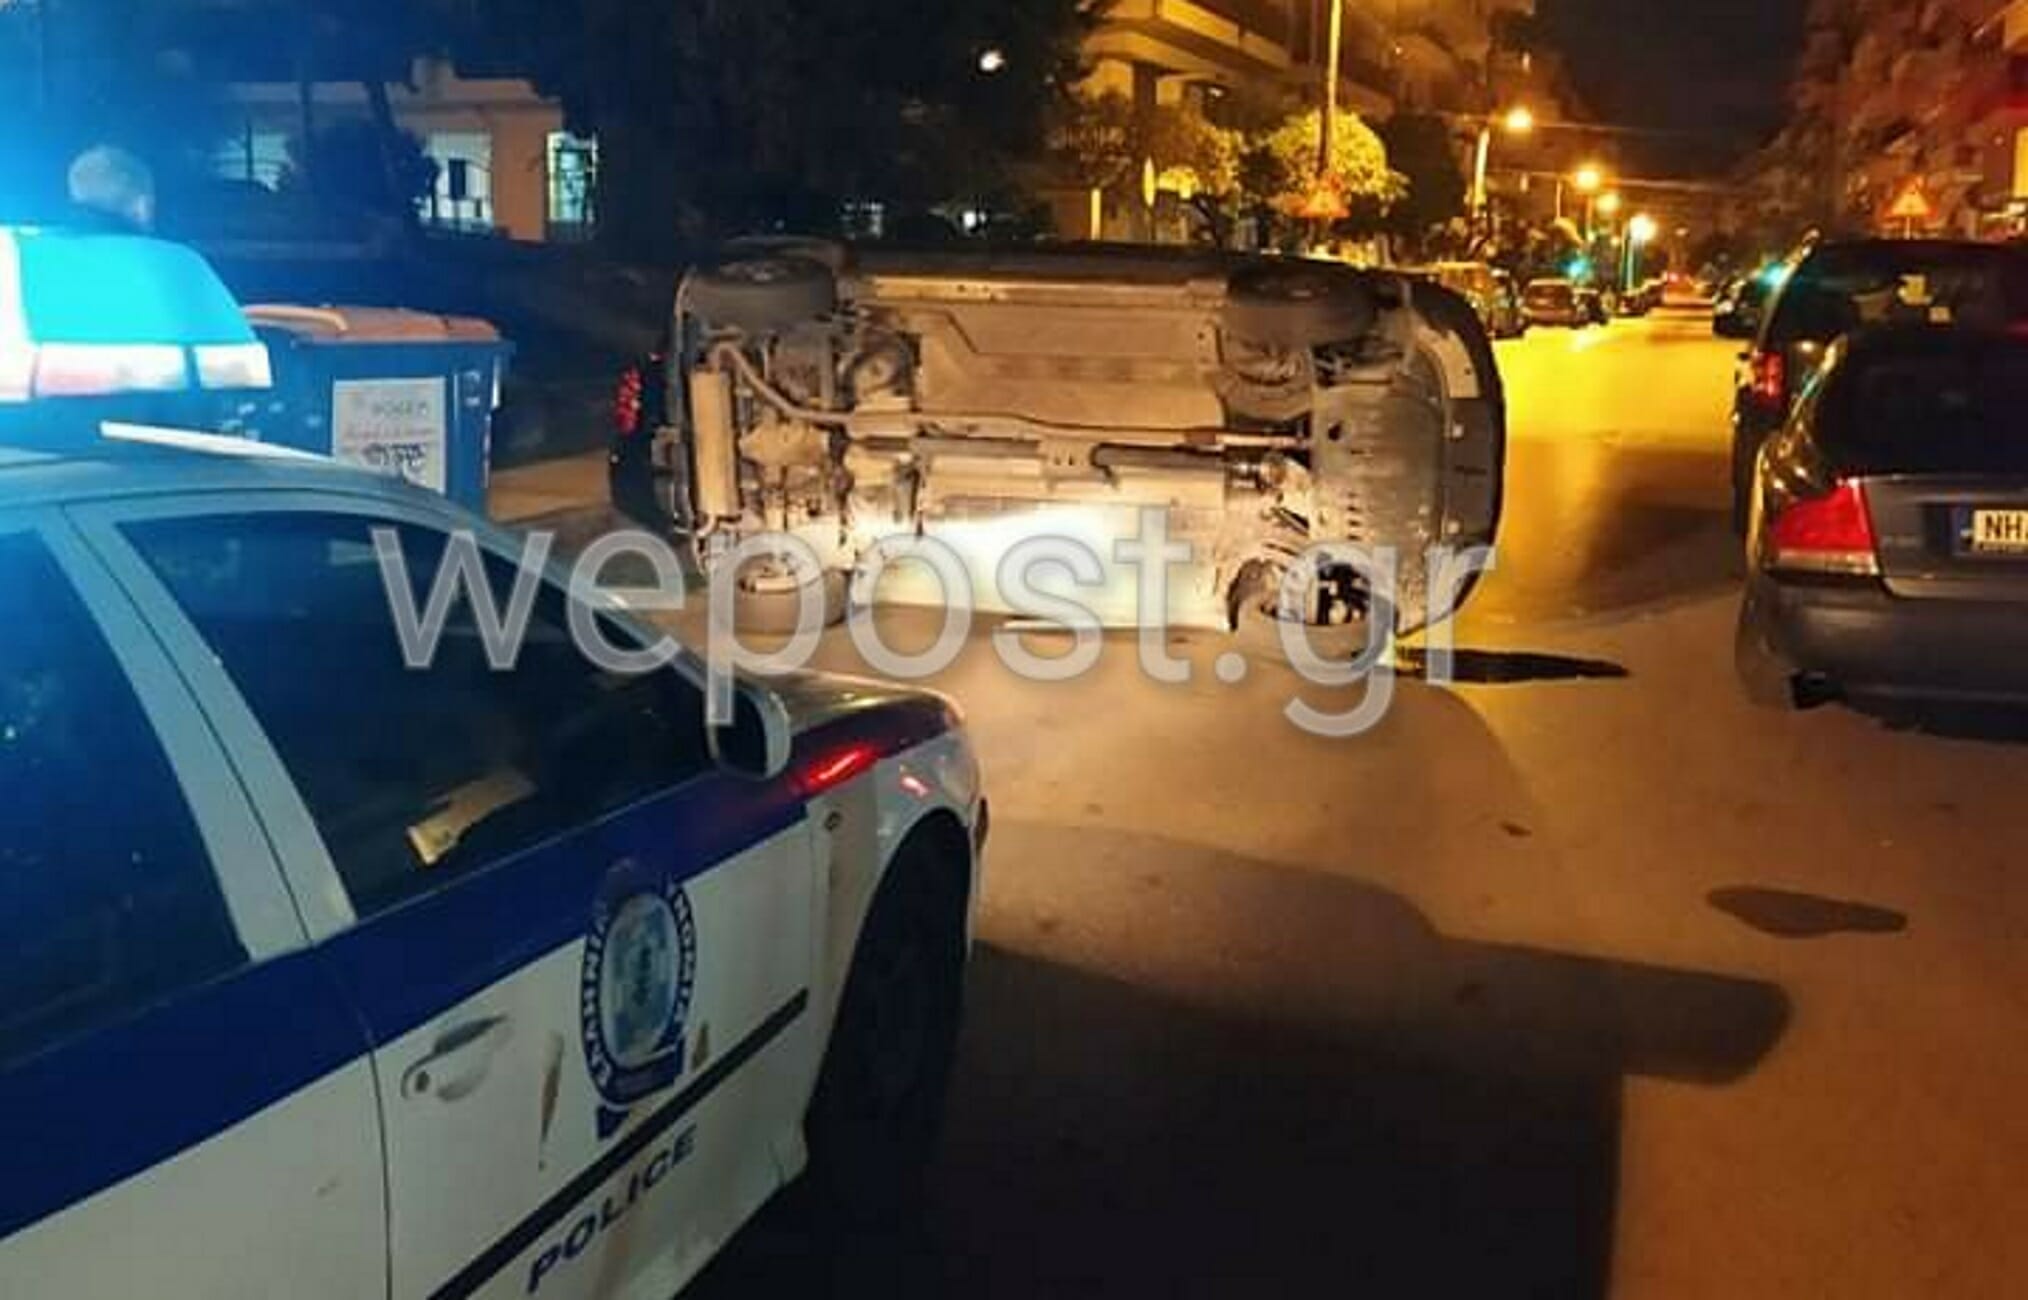 Θεσσαλονίκη: Εφιάλτης στο δρόμο της επιστροφής από νυχτερινή διασκέδαση! Αυτοψία στο σημείο του ατυχήματος (Φωτό)